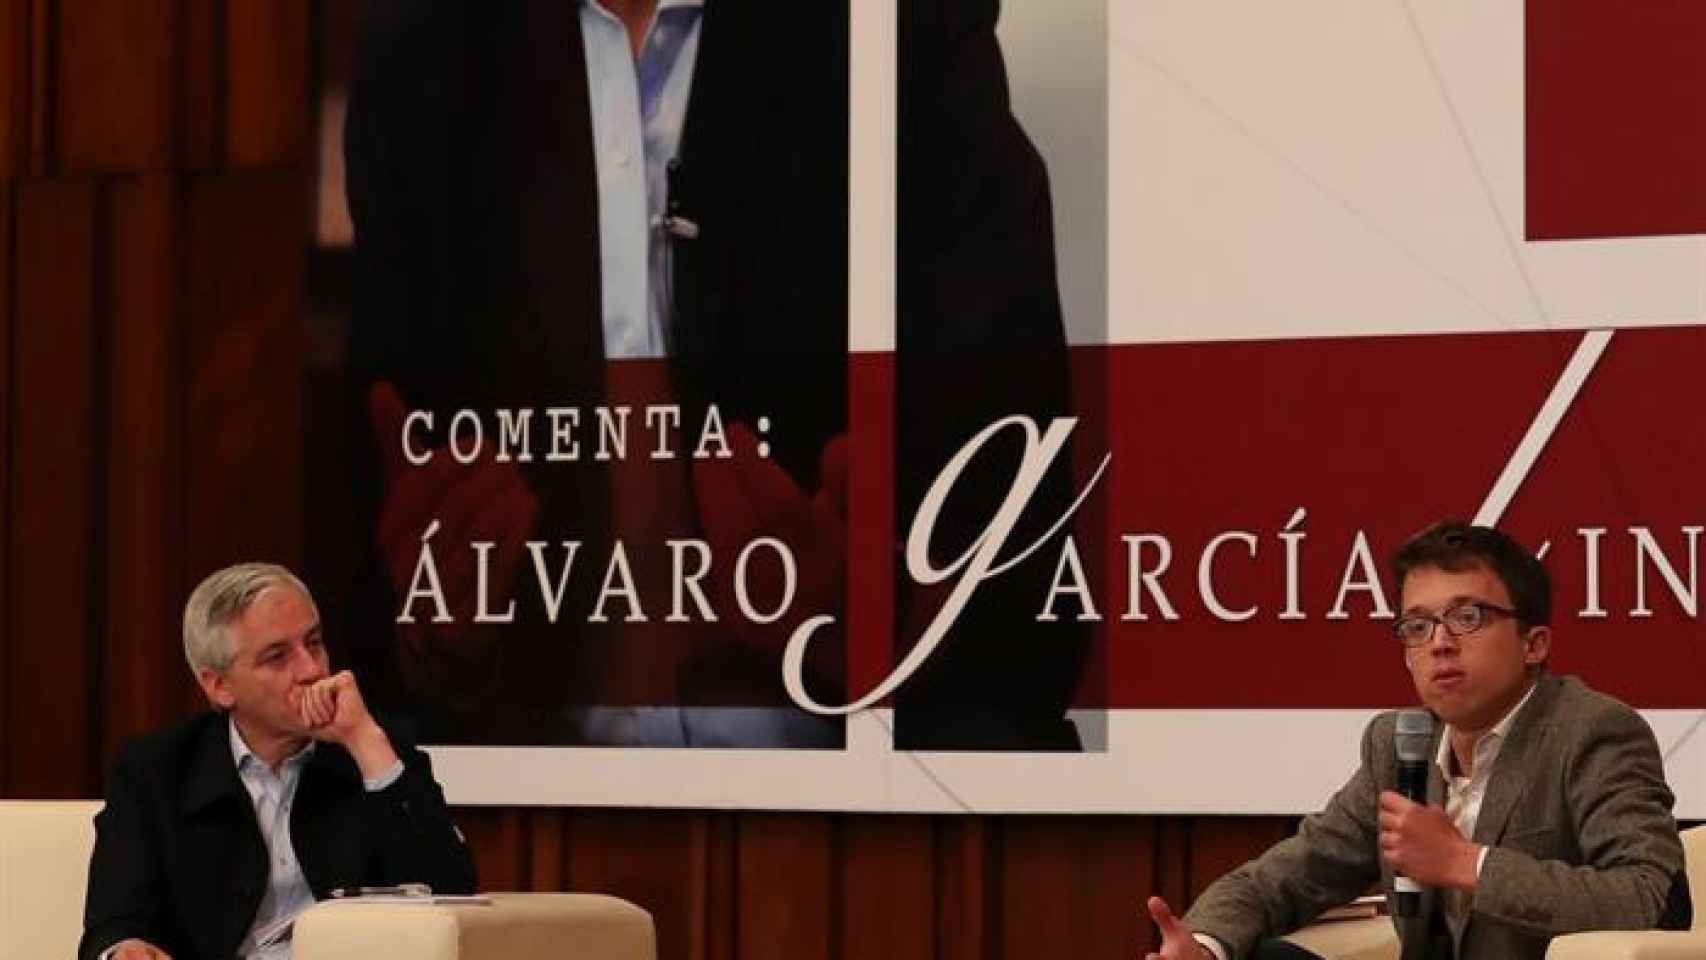 Íñigo Errejón durante su conferencia ayer en La Paz junto al vicepresidente de Bolivia Álvaro García Linera / EFE